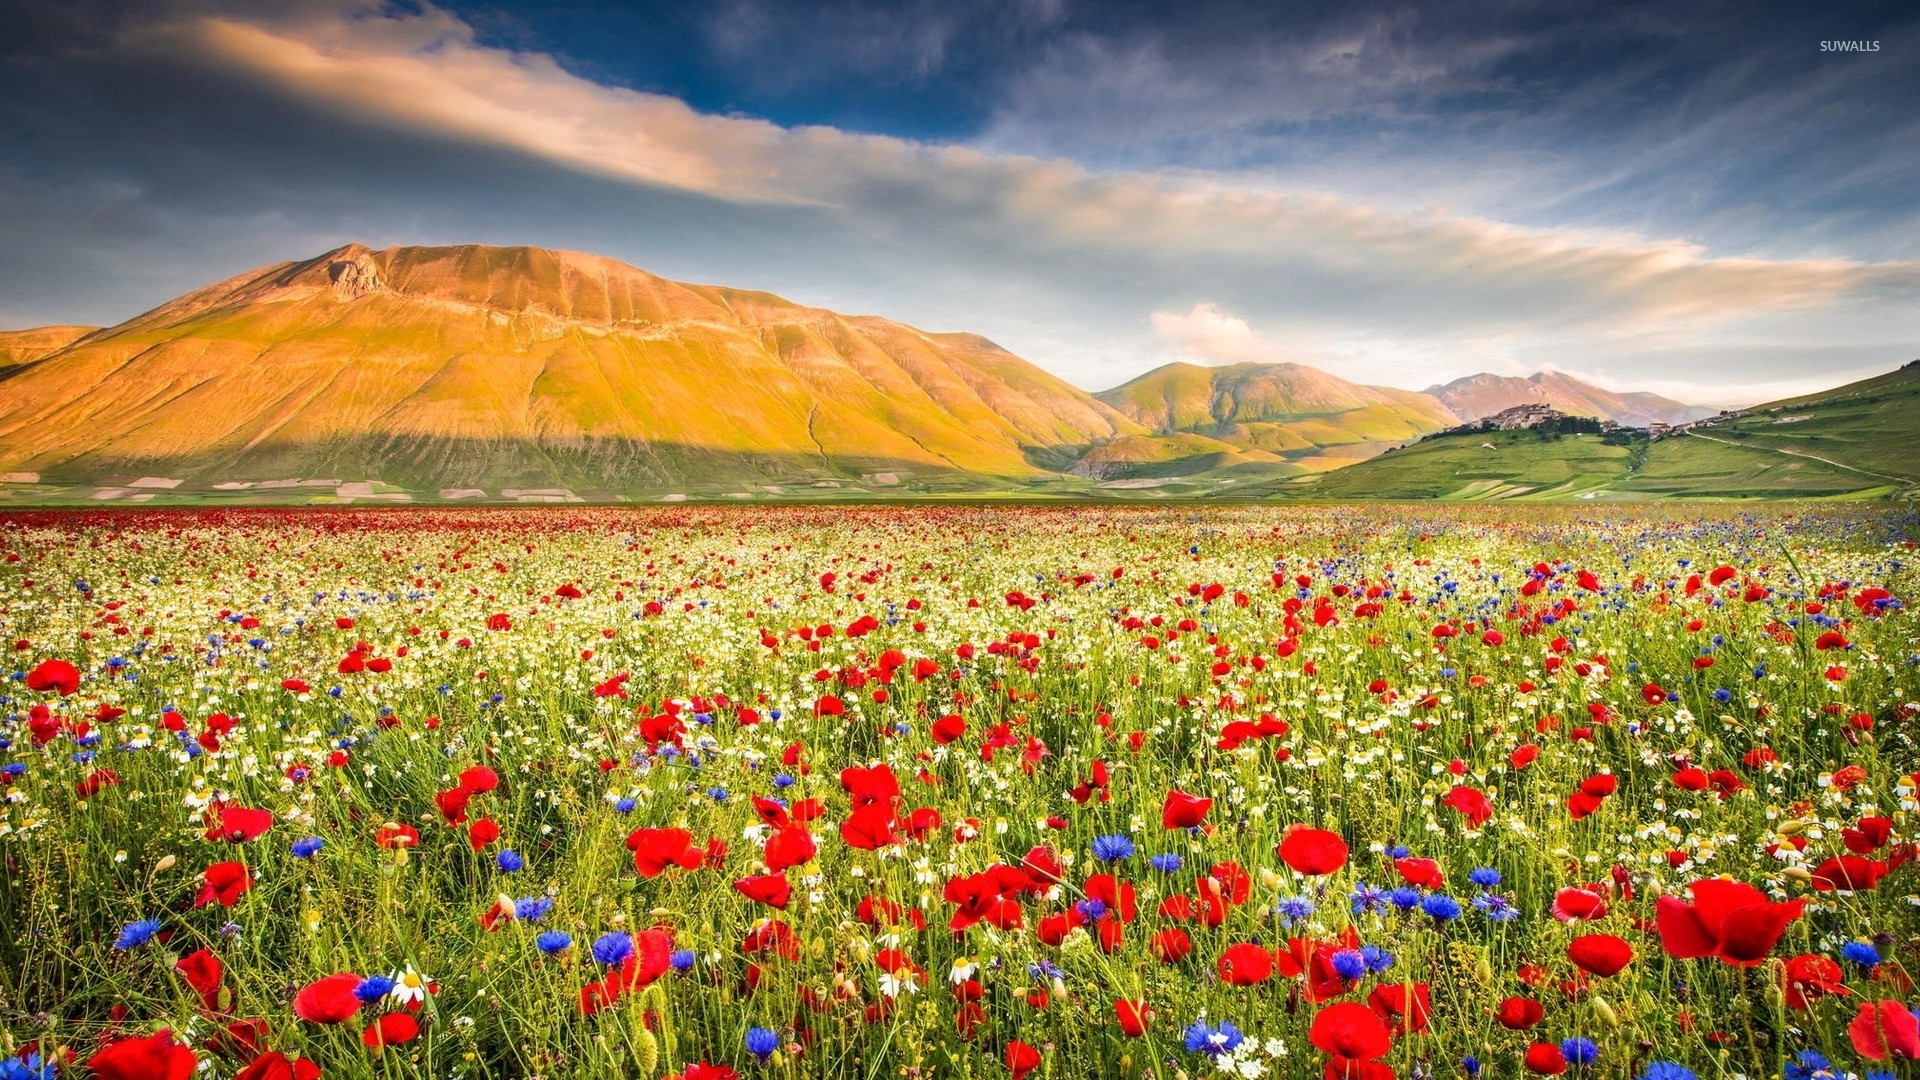 Poppy field near the rusty mountains wallpaper jpg